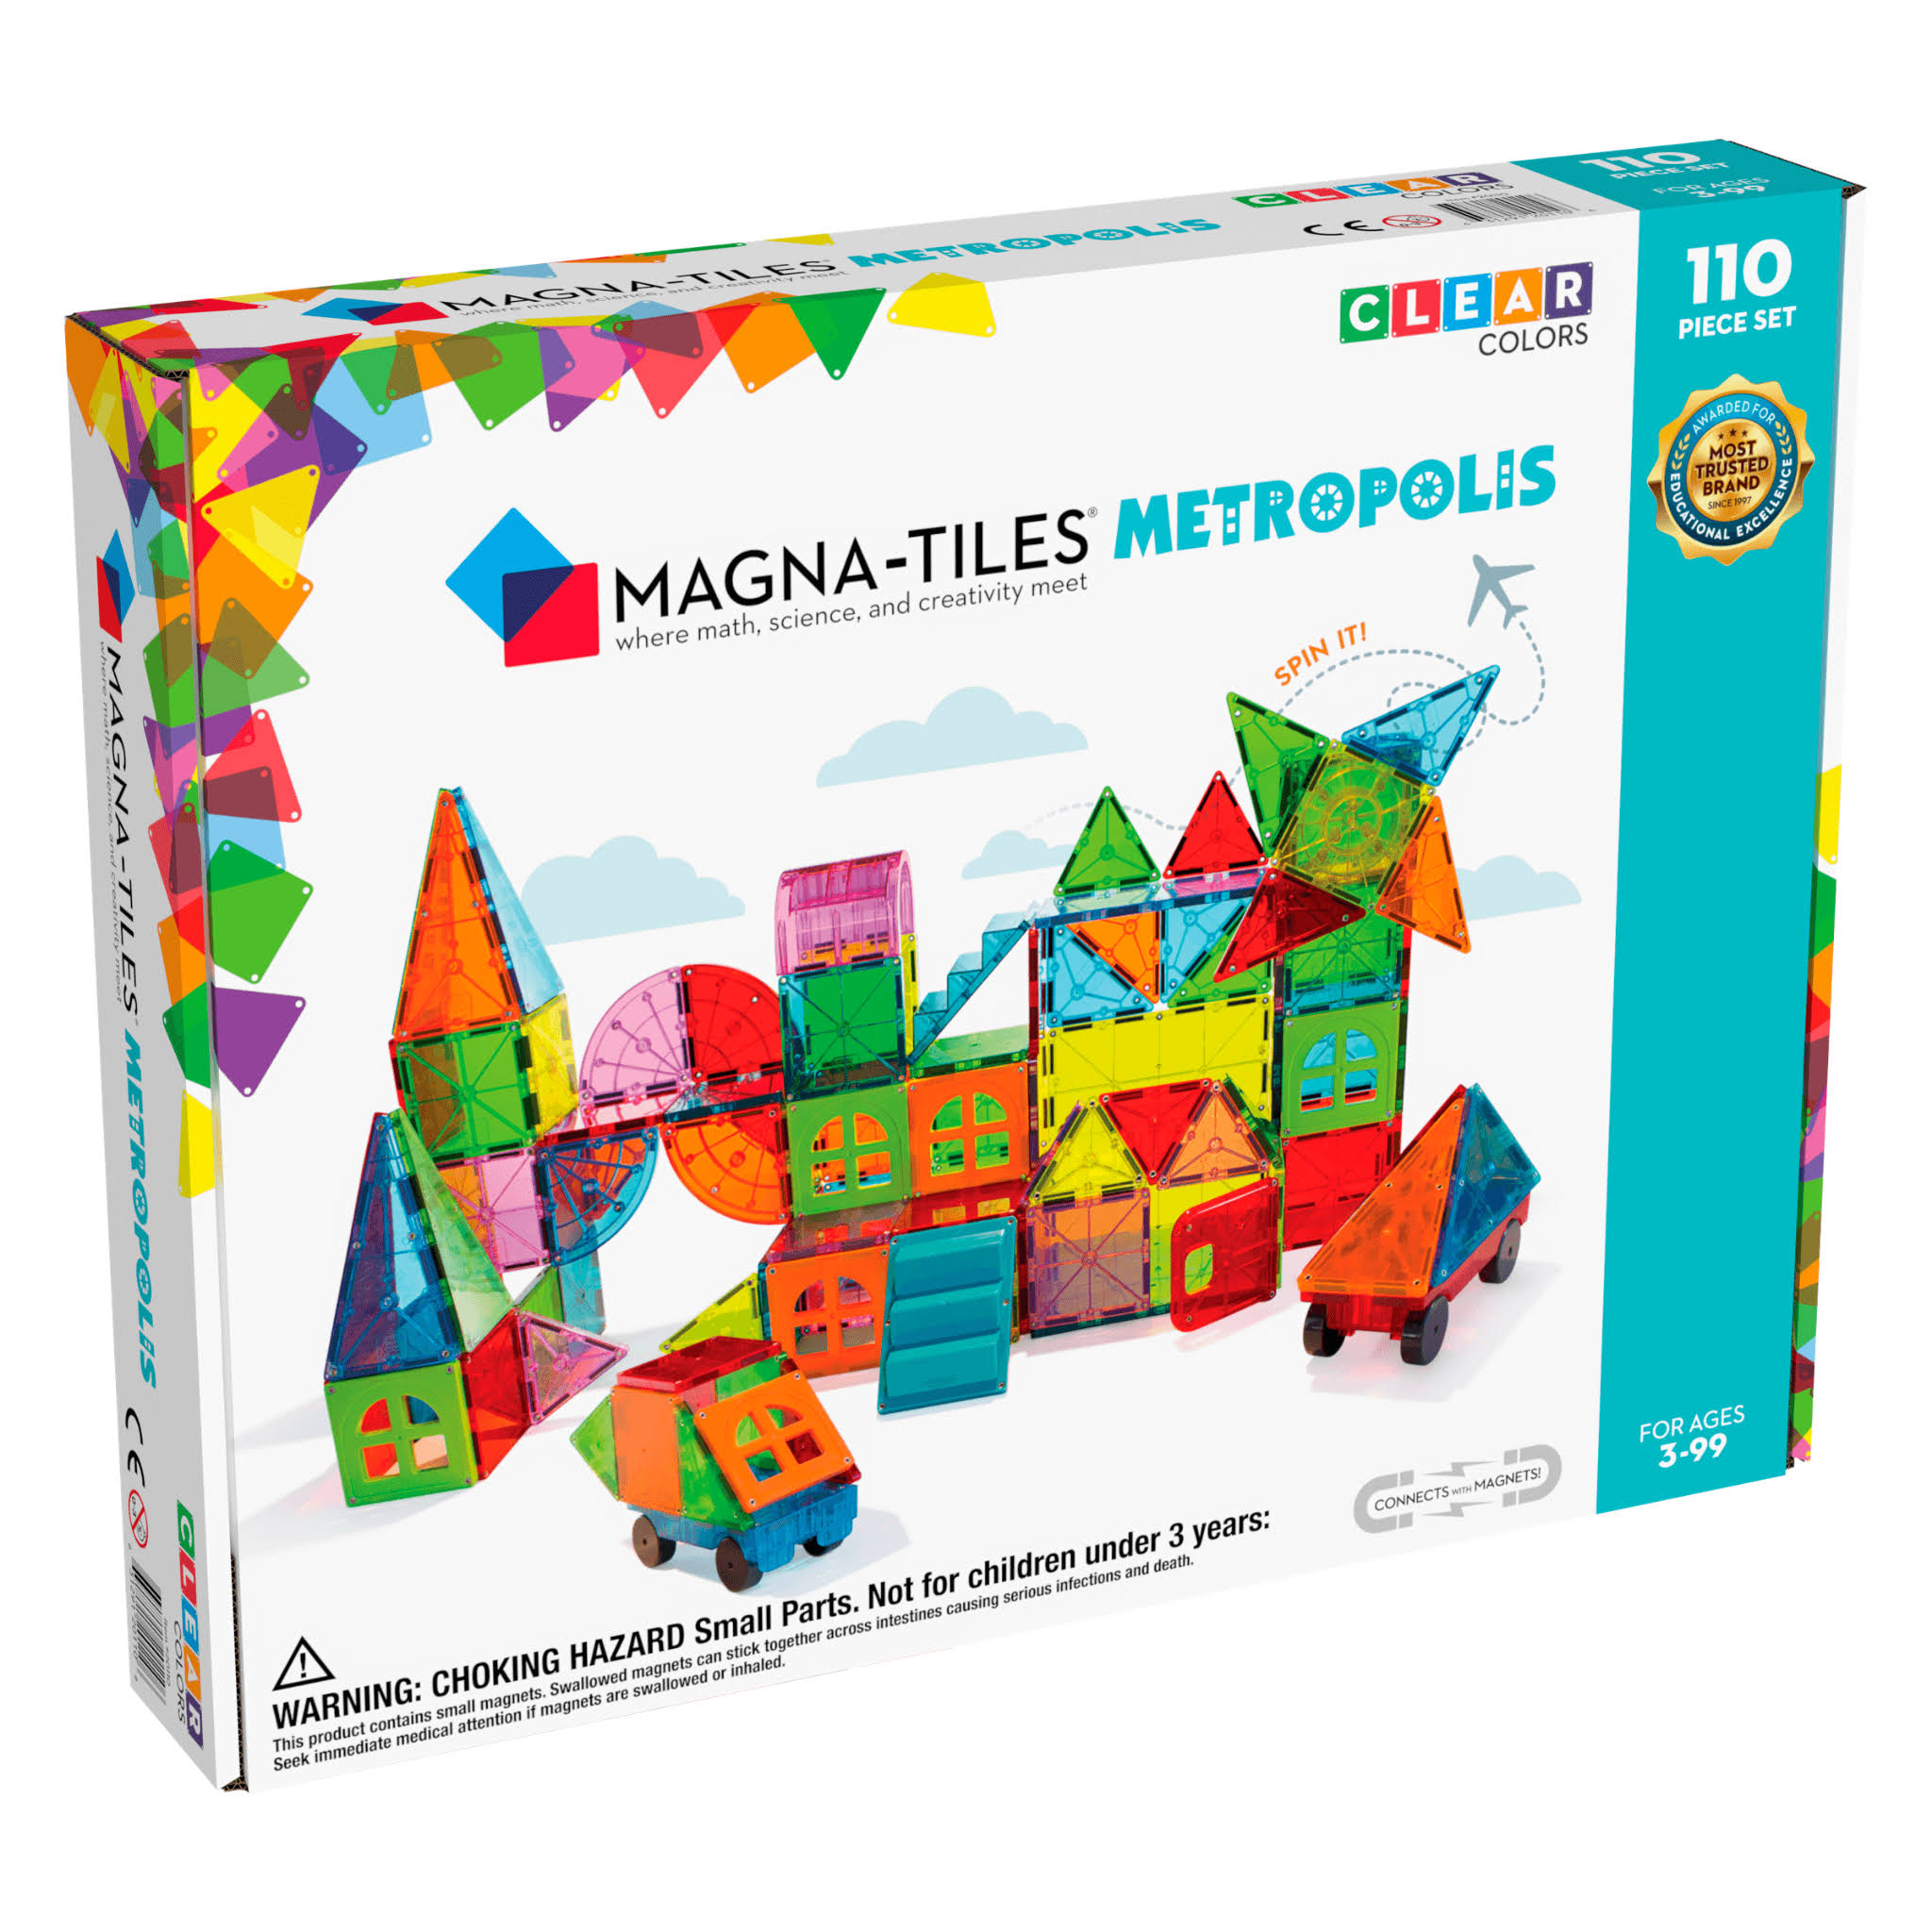 Magna Tiles Metropolis - 110 Piece Set